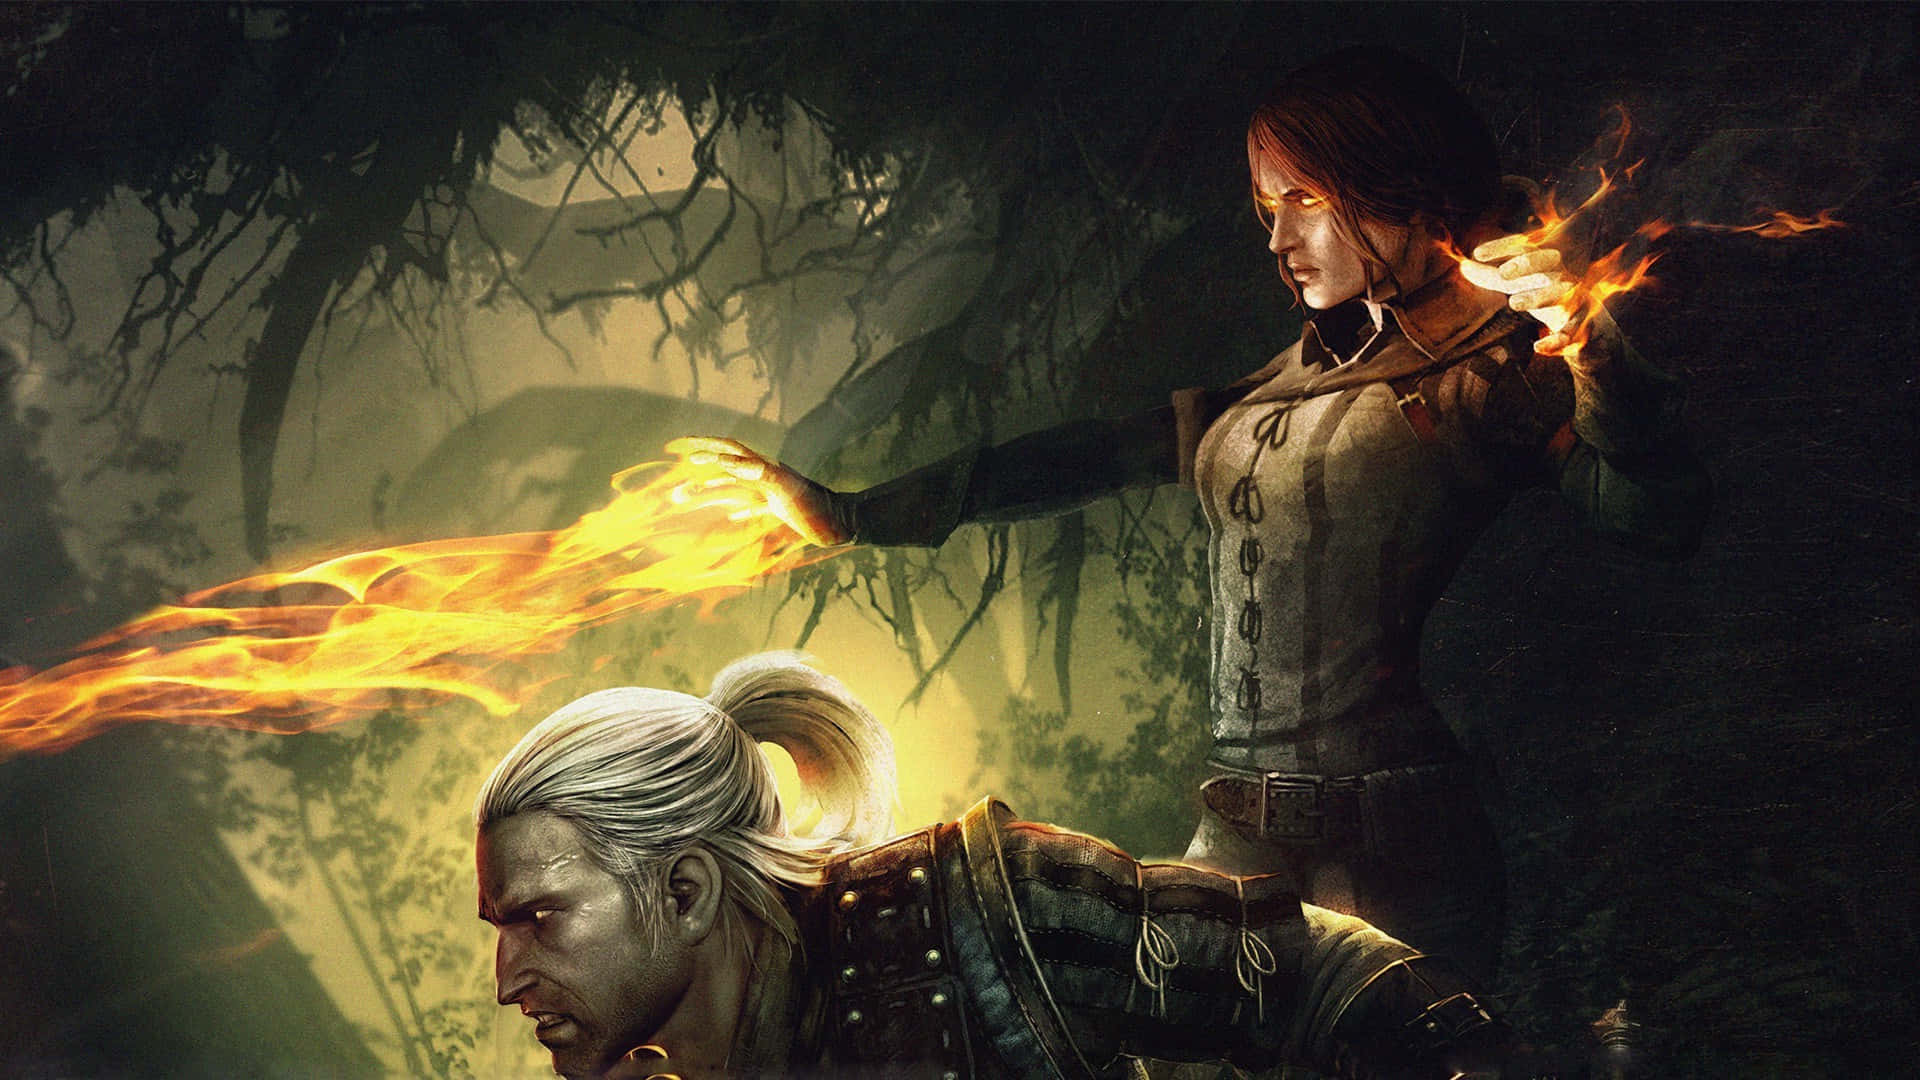 Geraltdi Rivia, Il Witcher, In Azione Contro Creature Misteriose In Una Foresta Oscura.